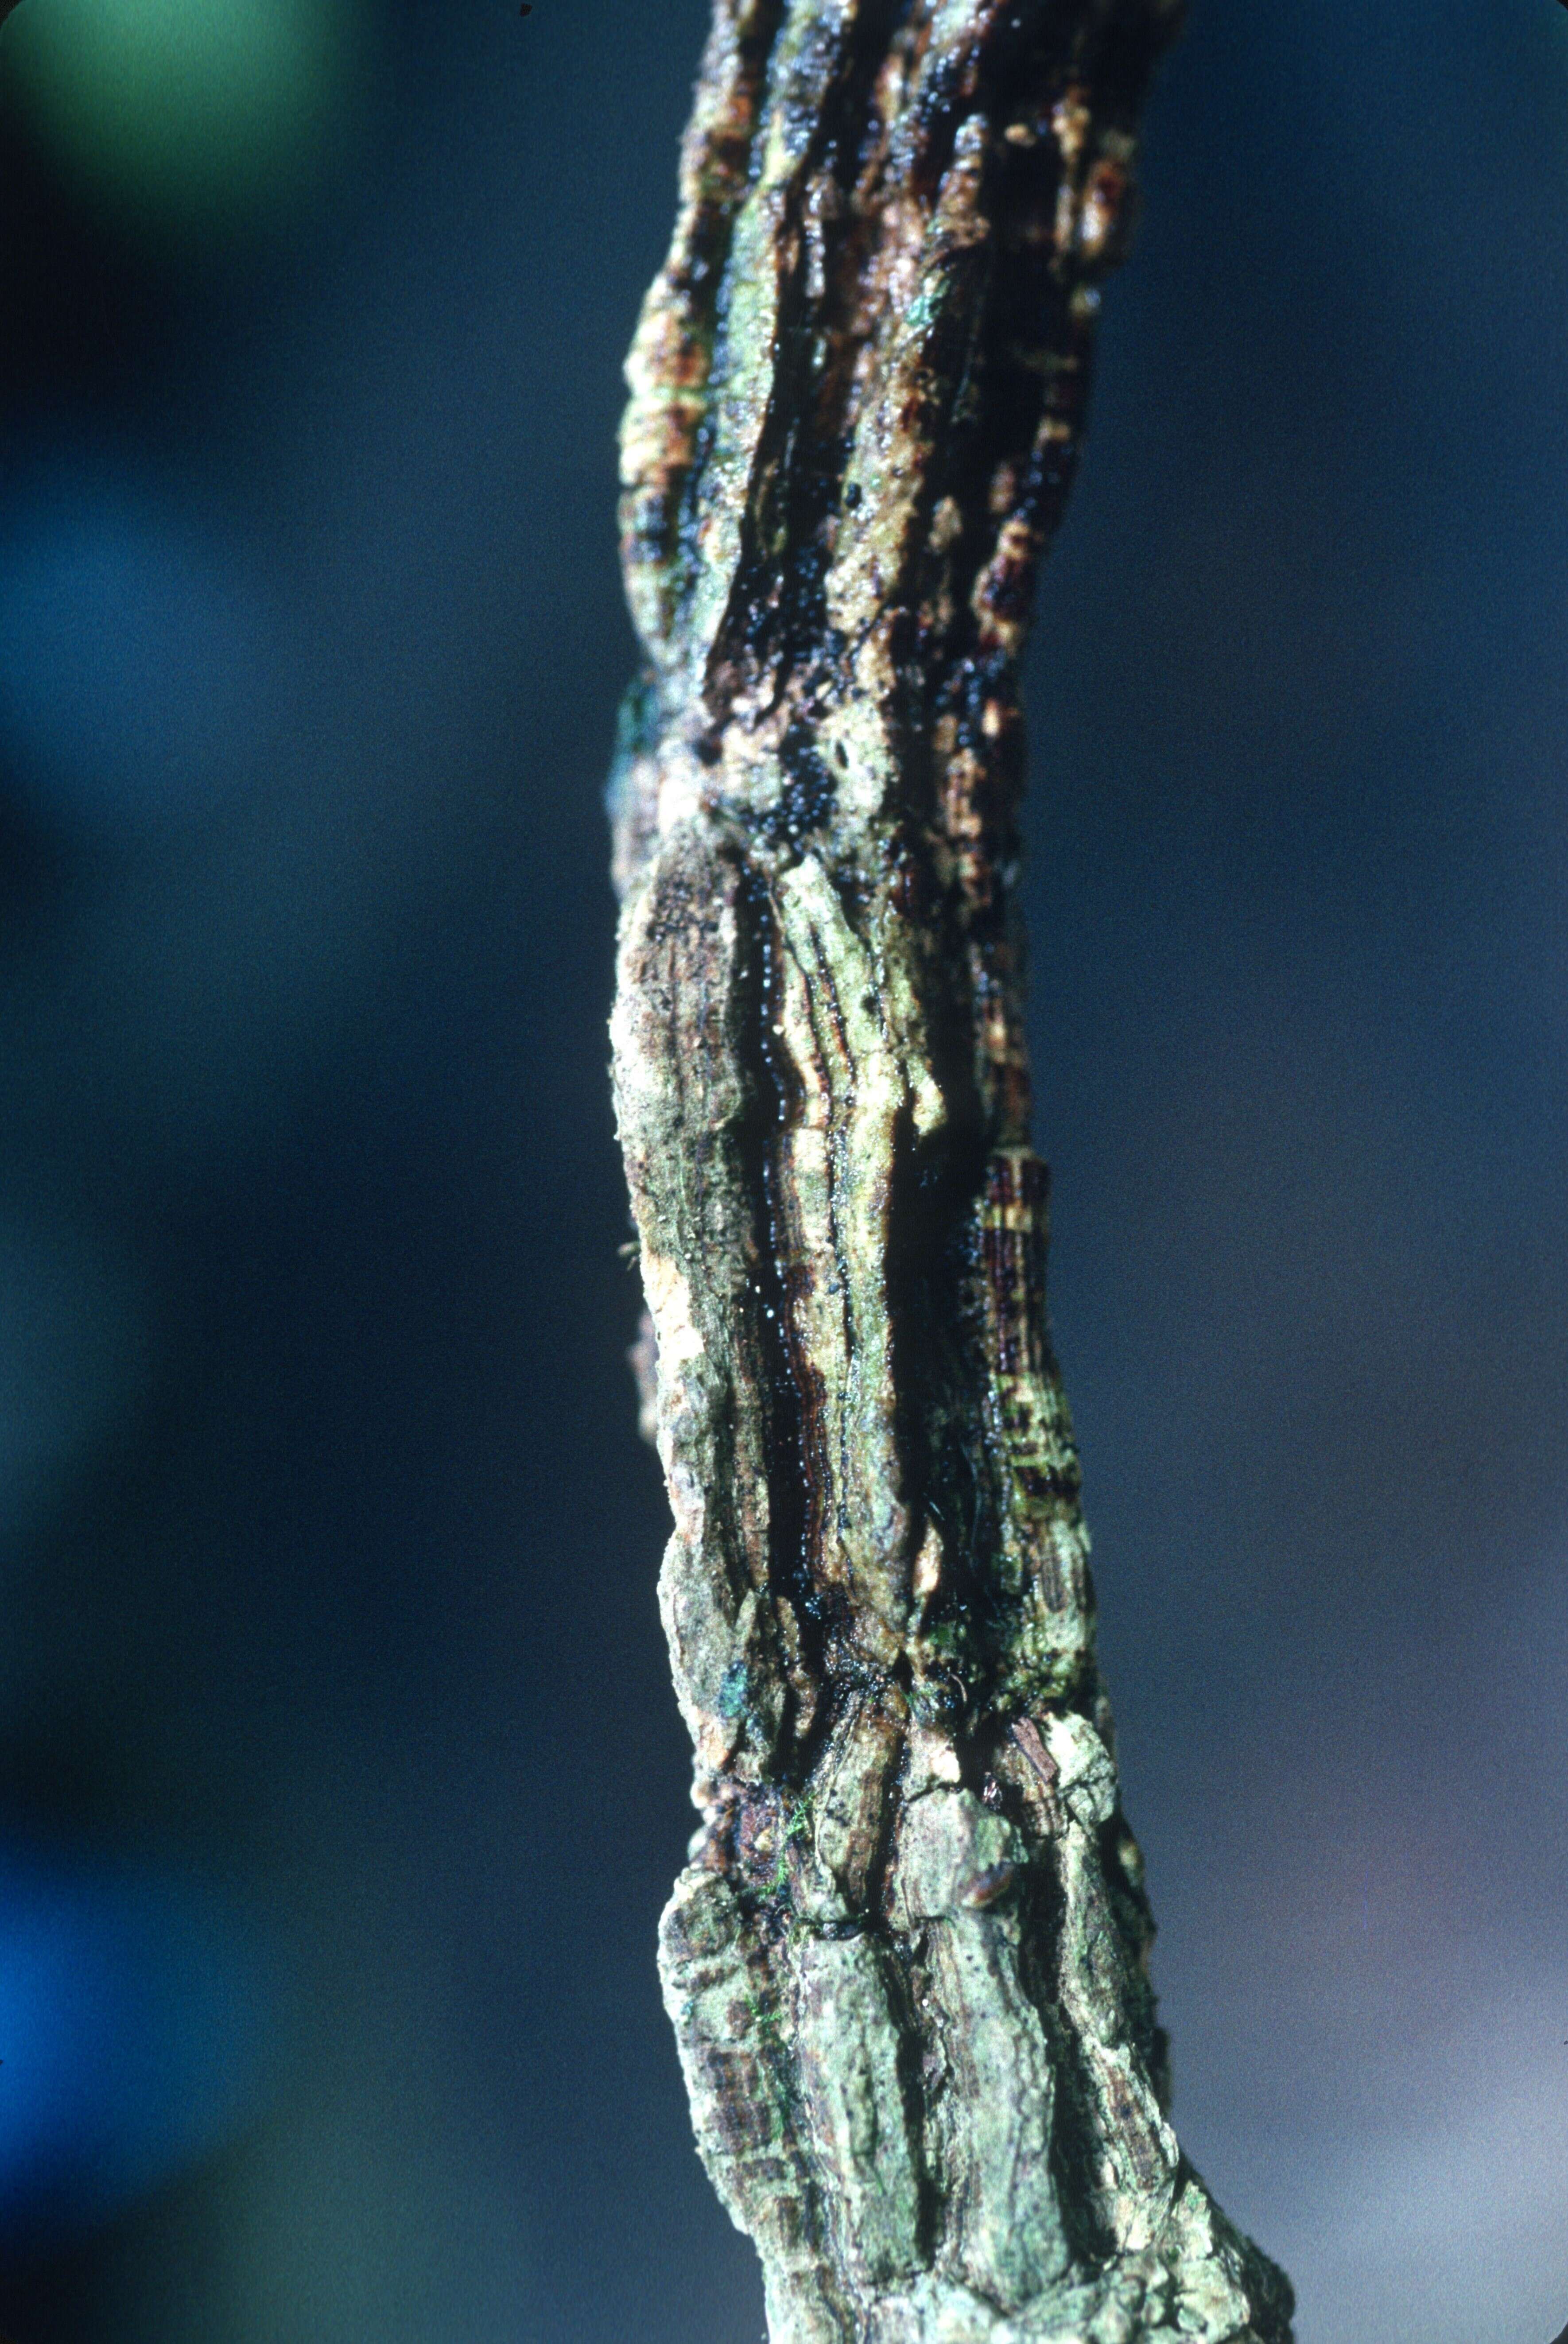 Image of cyclanthera